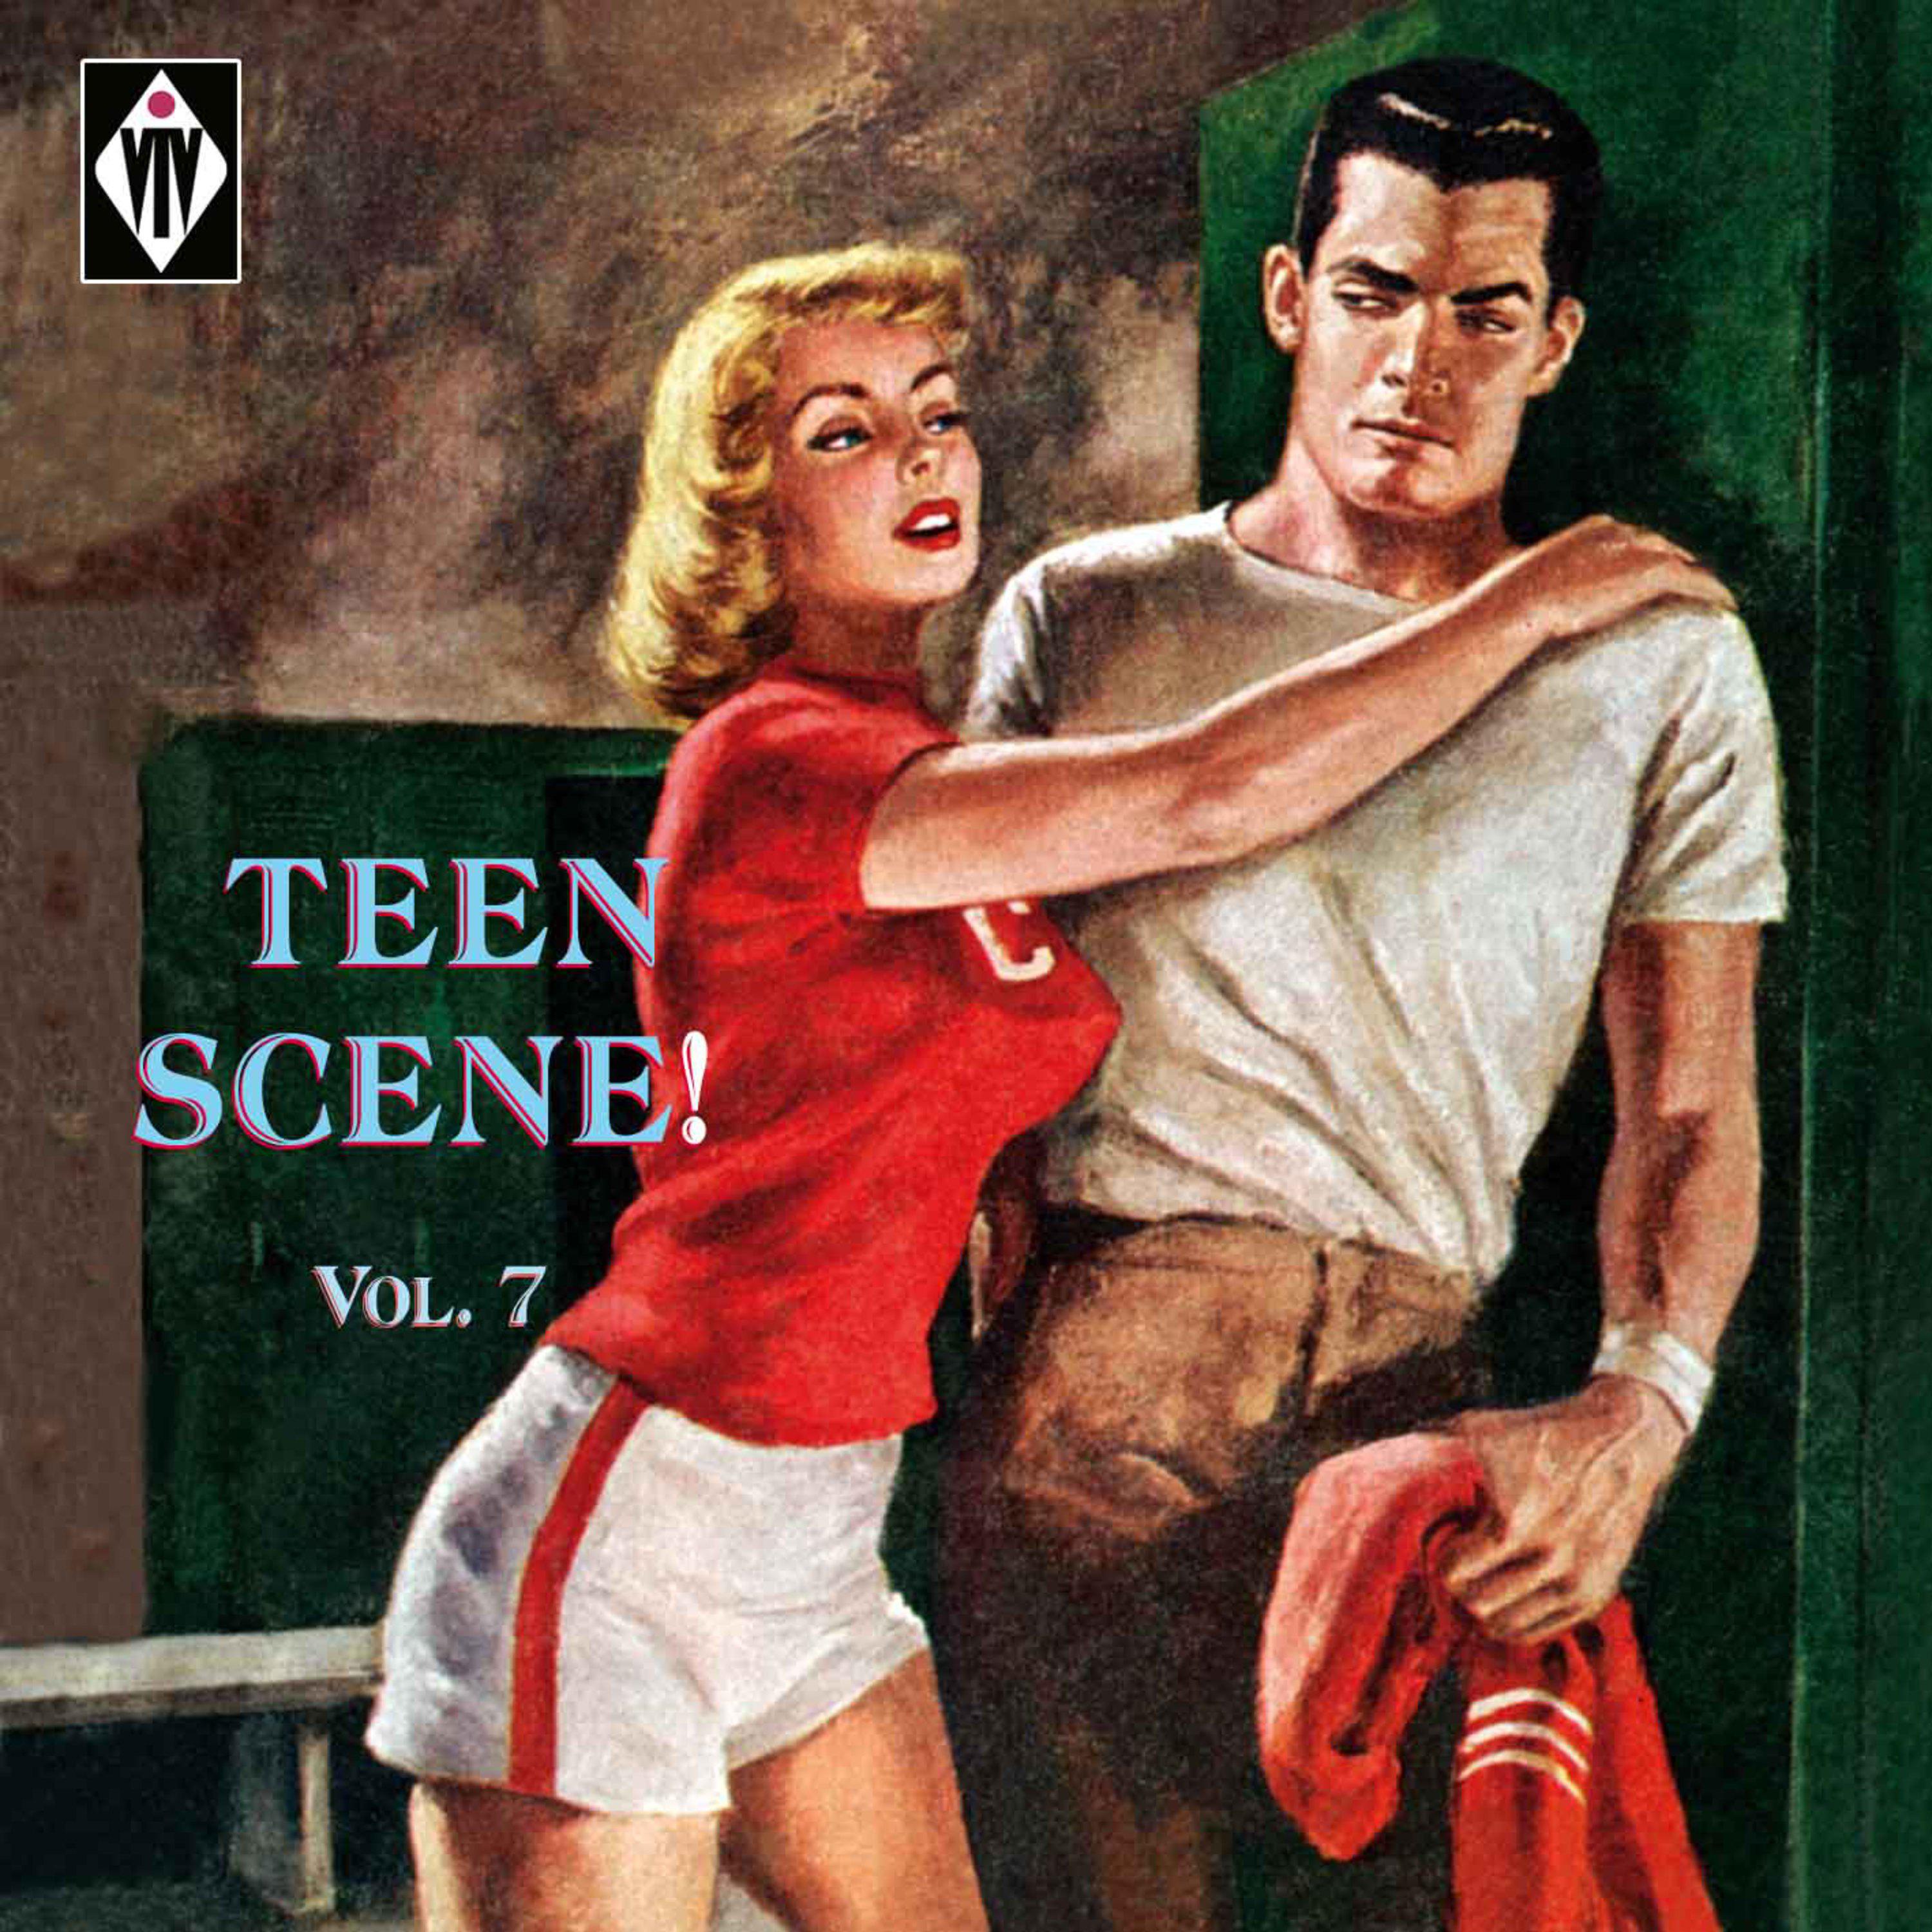 Teen Scene!, Vol. 7